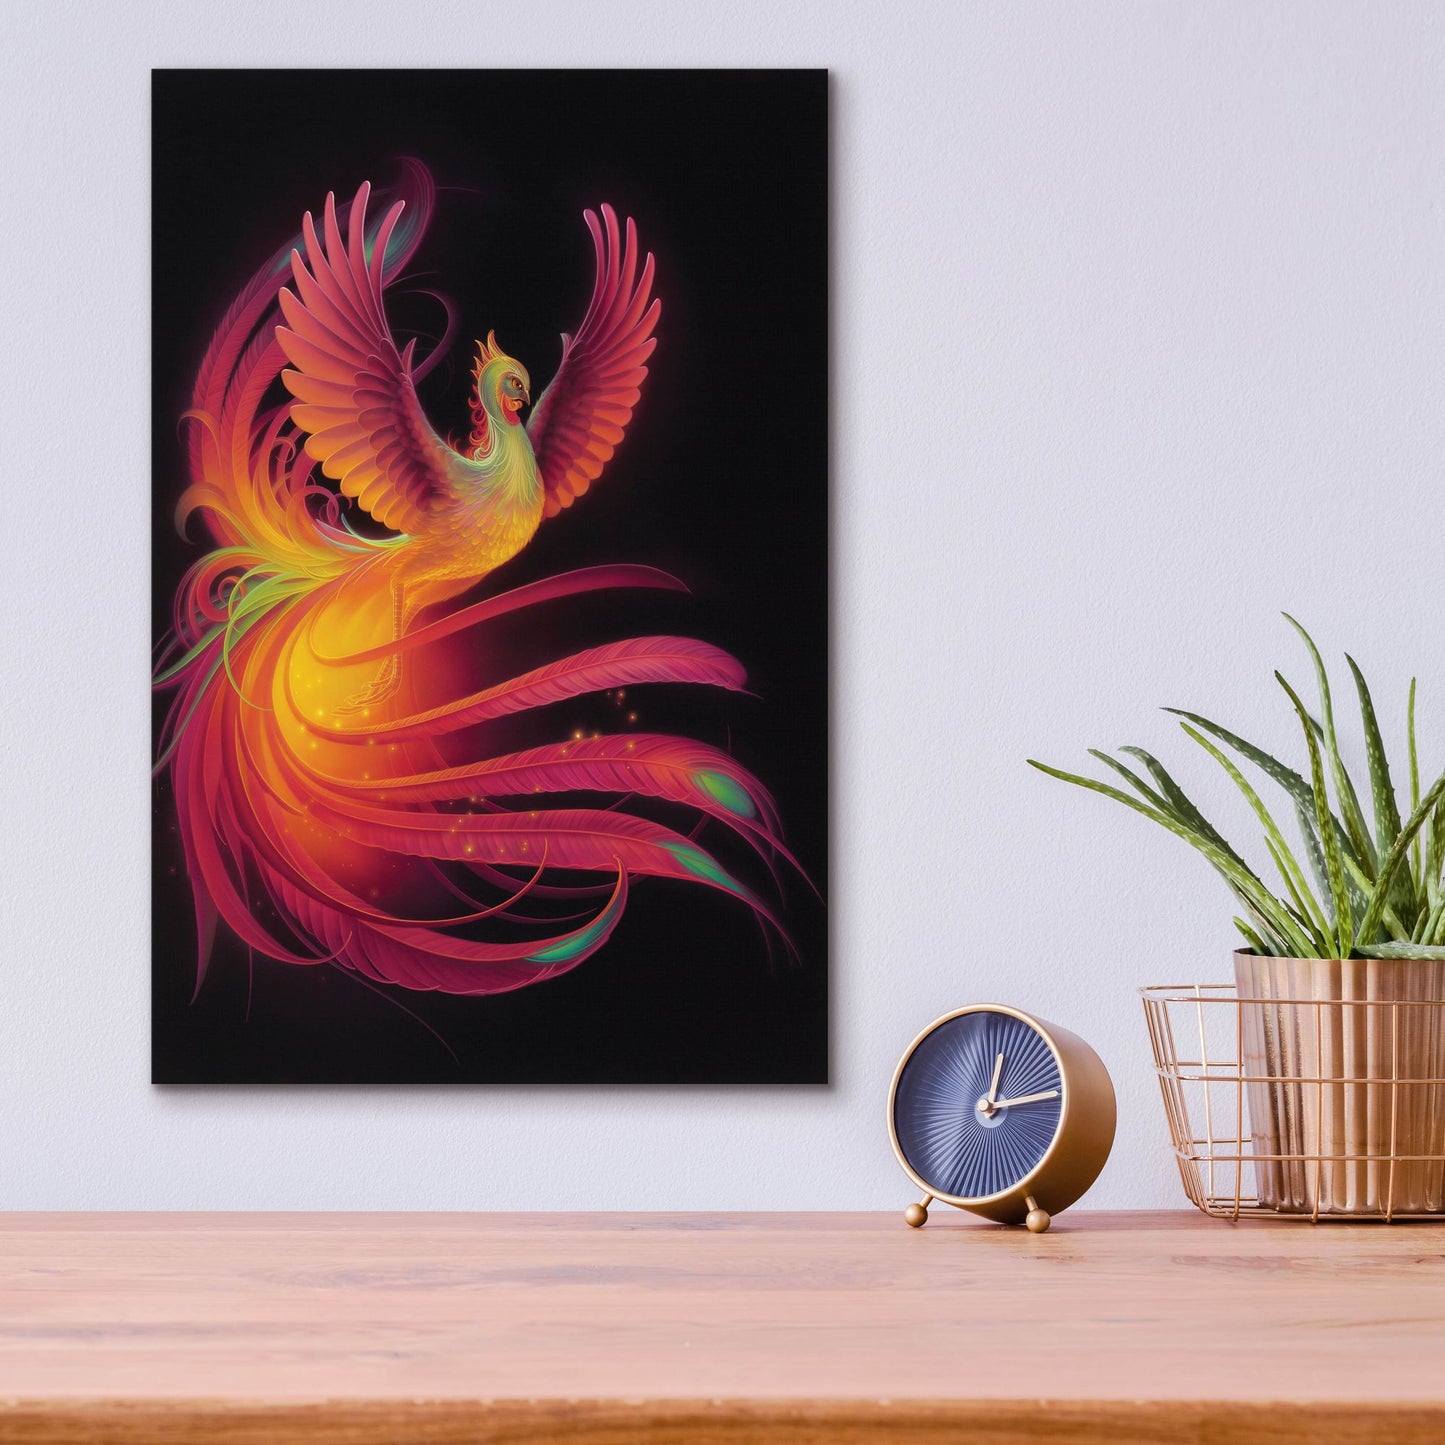 Epic Art 'Phoenix' by Kirk Reinert, Acrylic Glass Wall Art,12x16